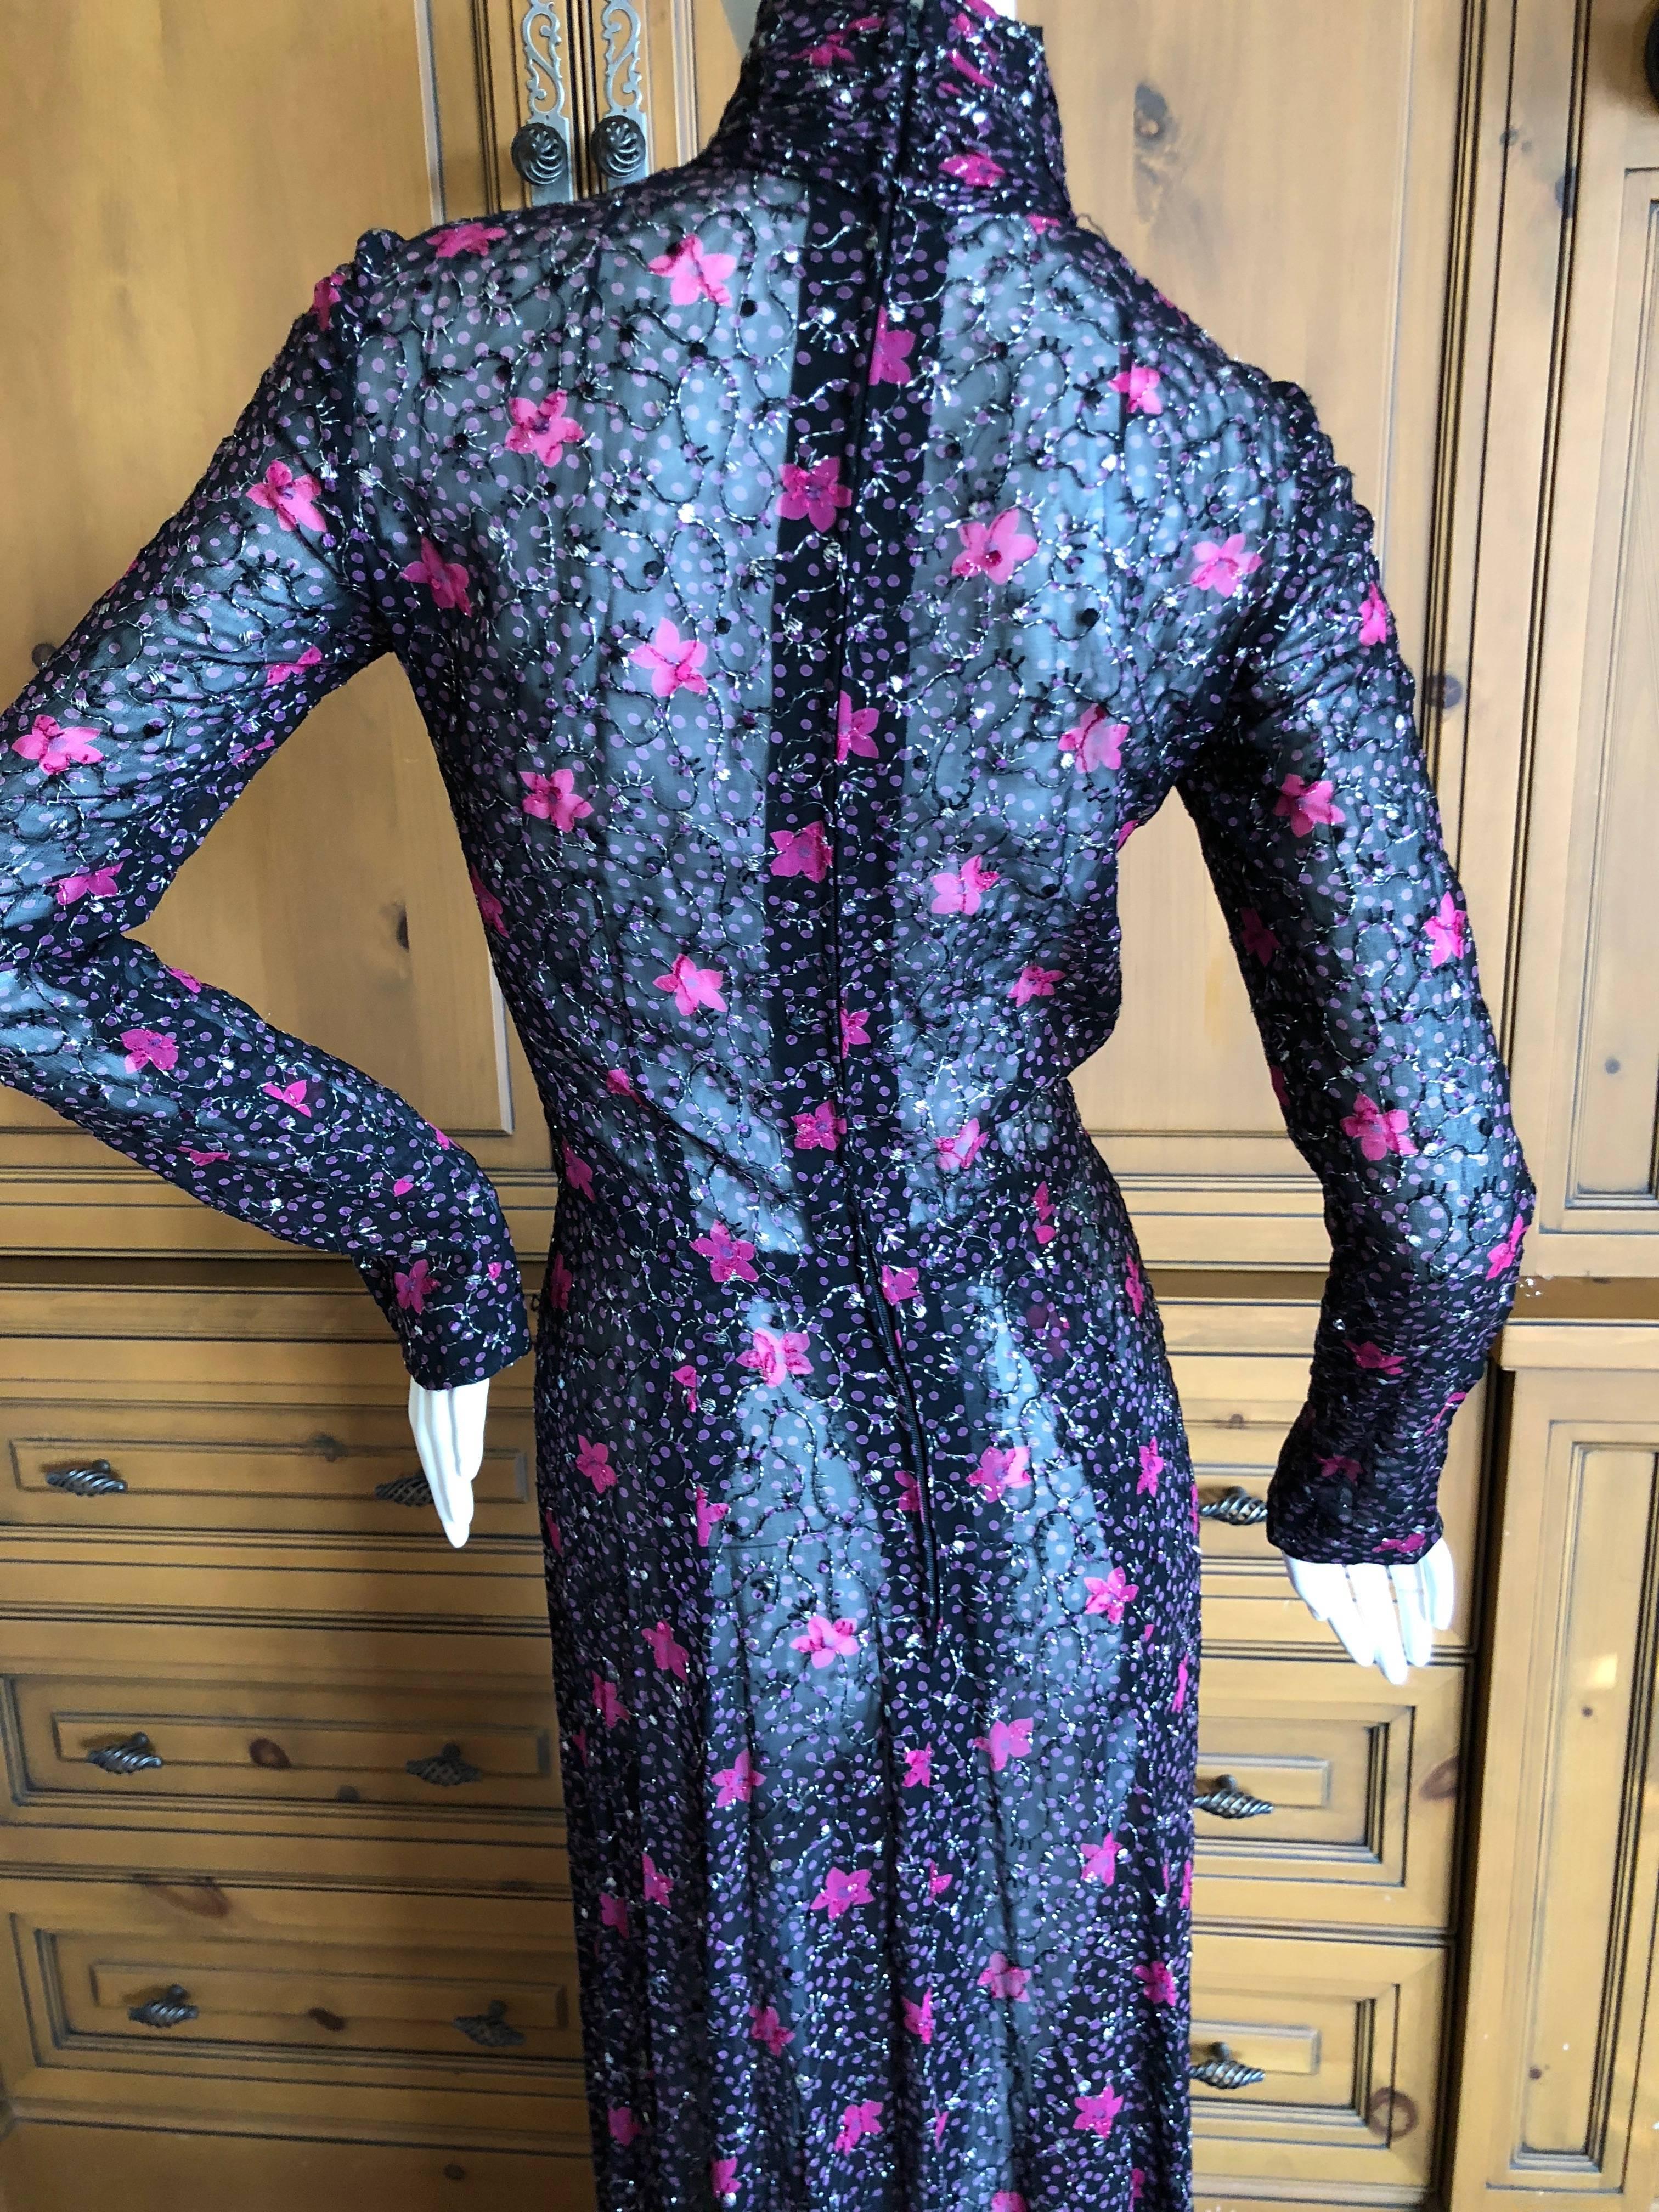 Cardinali Sheer Metallic Devore Velvet Floral Pattern Evening Dress For Sale 4